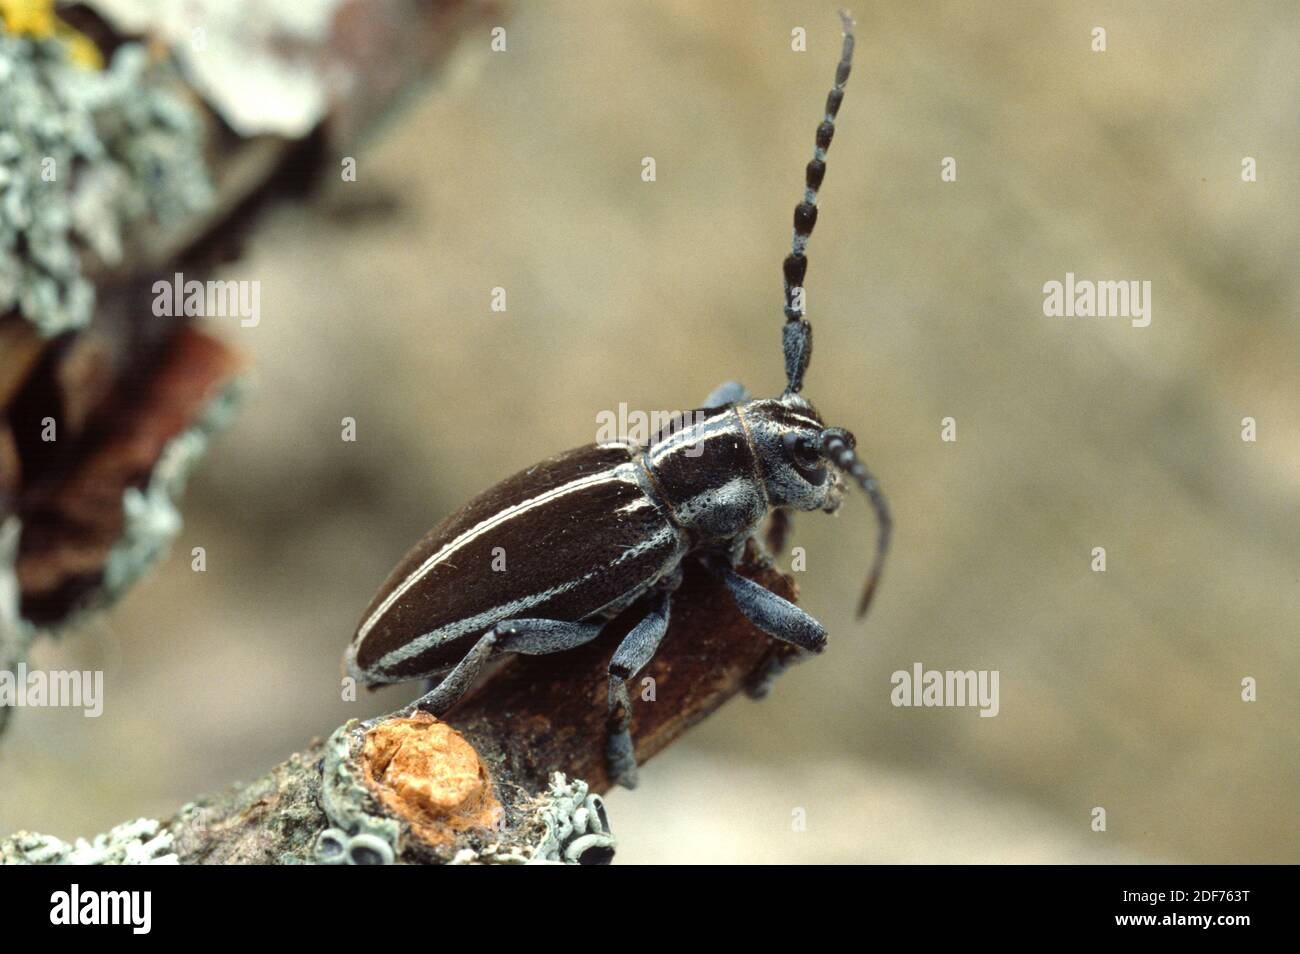 Le longicorne (Iberodorcadion molitor) est un coléoptère originaire de la péninsule ibérique et du sud-ouest de la France. Banque D'Images